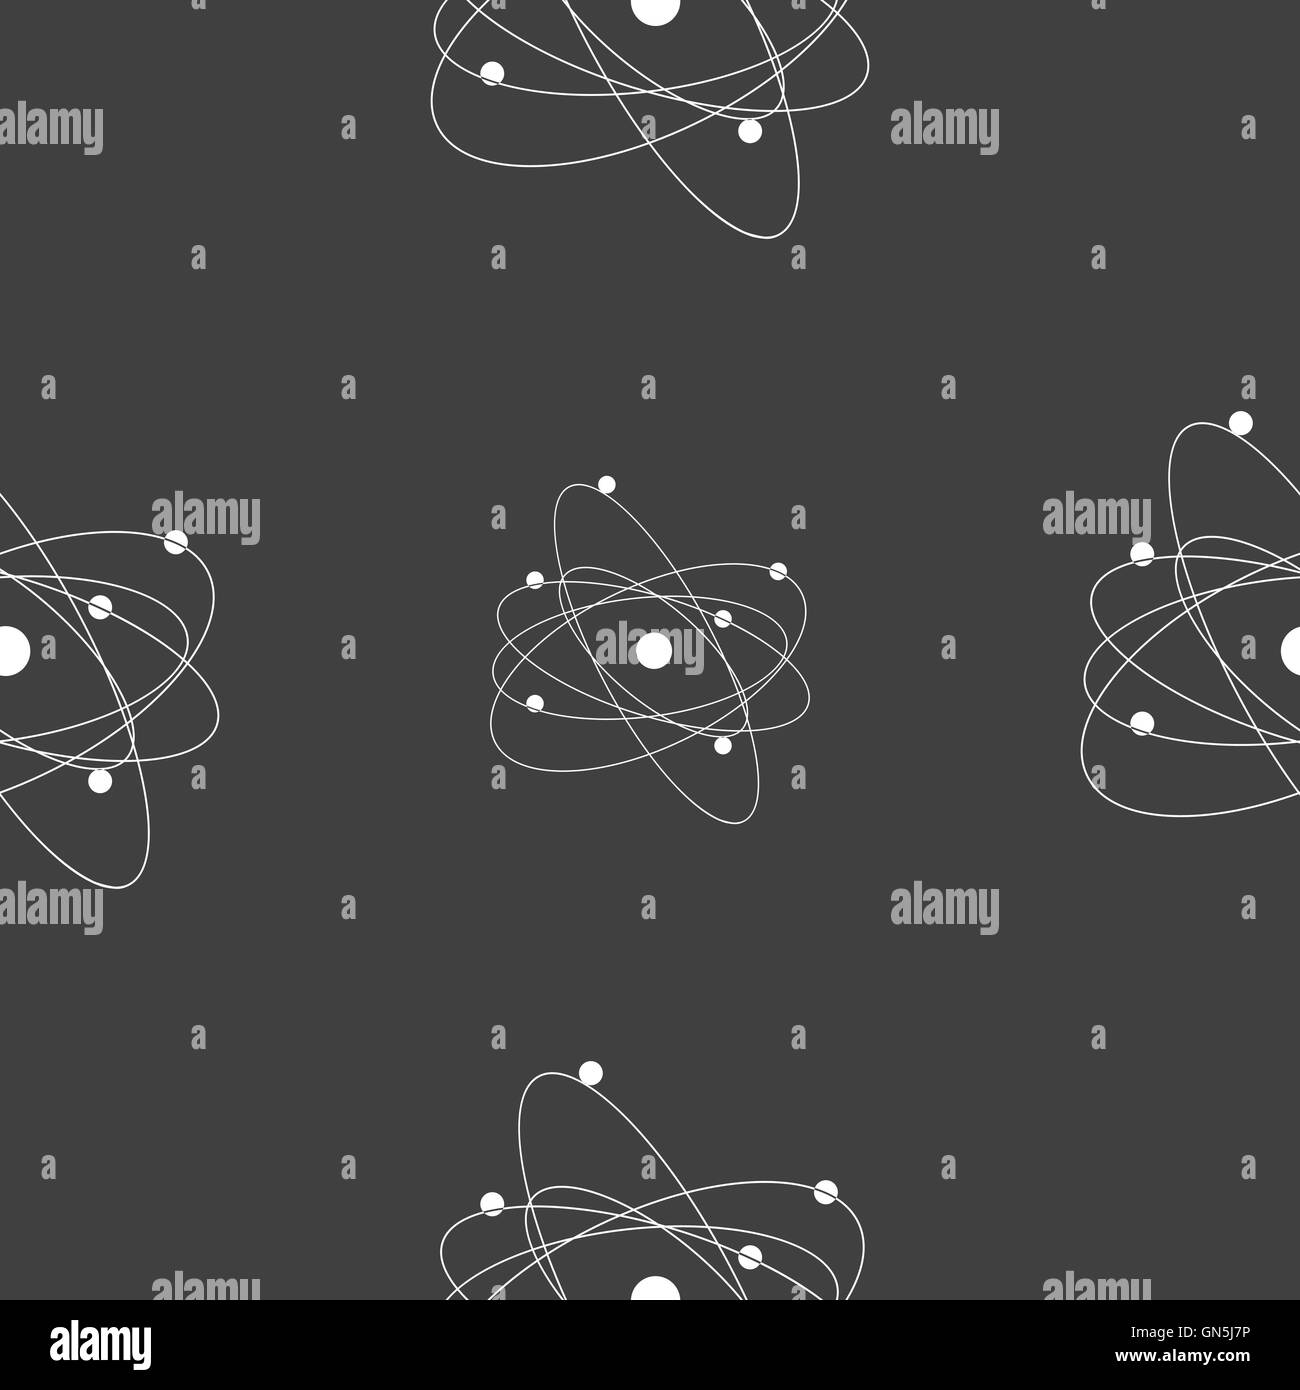 Physik, Atom, Urknall Symbol Zeichen. Nahtlose Muster auf einem grauen Hintergrund. Vektor Stock Vektor